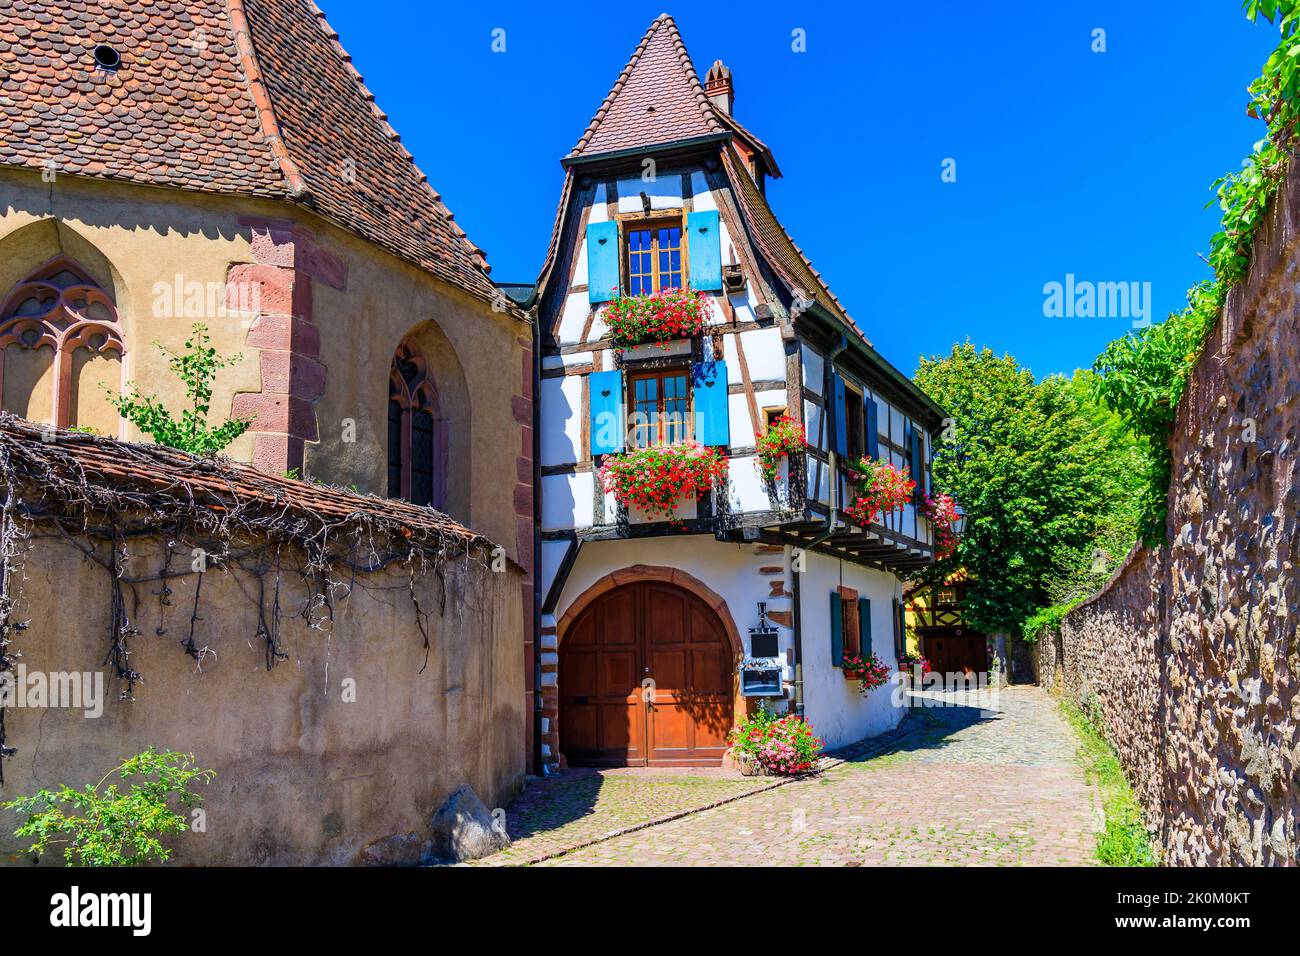 Kaysersberg Vignoble, Francia. Pintoresca calle con casas tradicionales de entramado de madera en la Ruta del Vino de Alsacia. Foto de stock